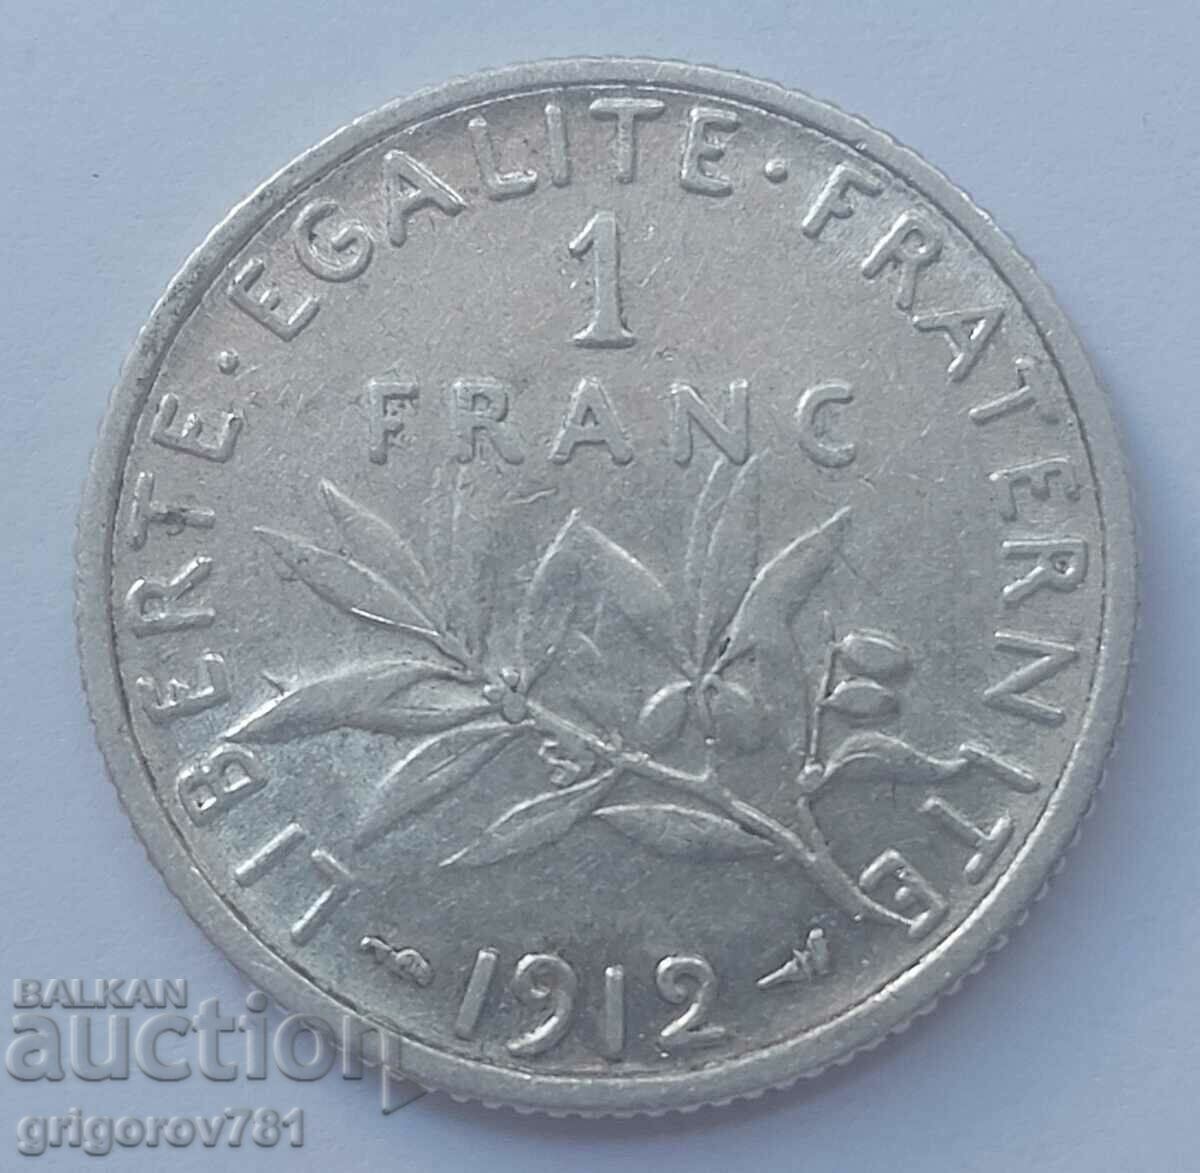 Ασημένιο 1 φράγκου Γαλλία 1912 - ασημένιο νόμισμα №1